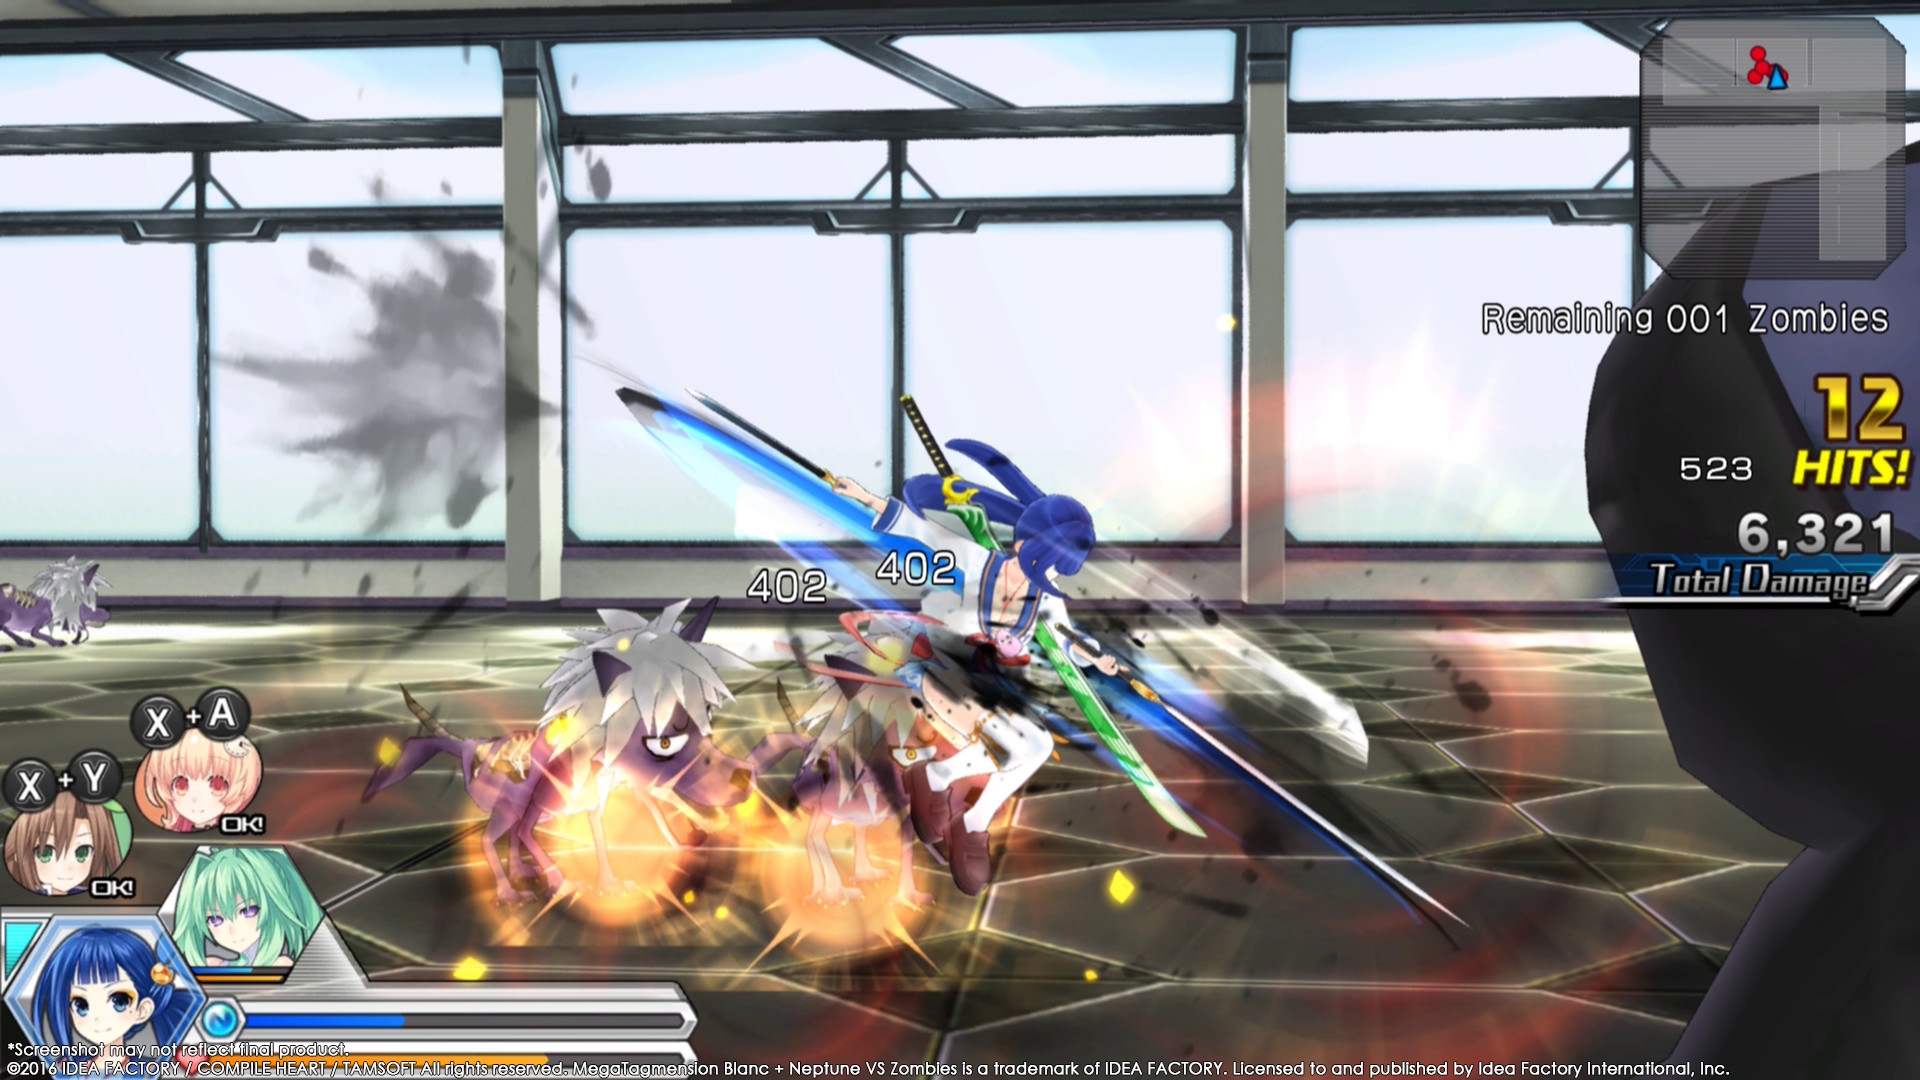 Скриншот из игры MegaTagmension Blanc + Neptune VS Zombies под номером 10